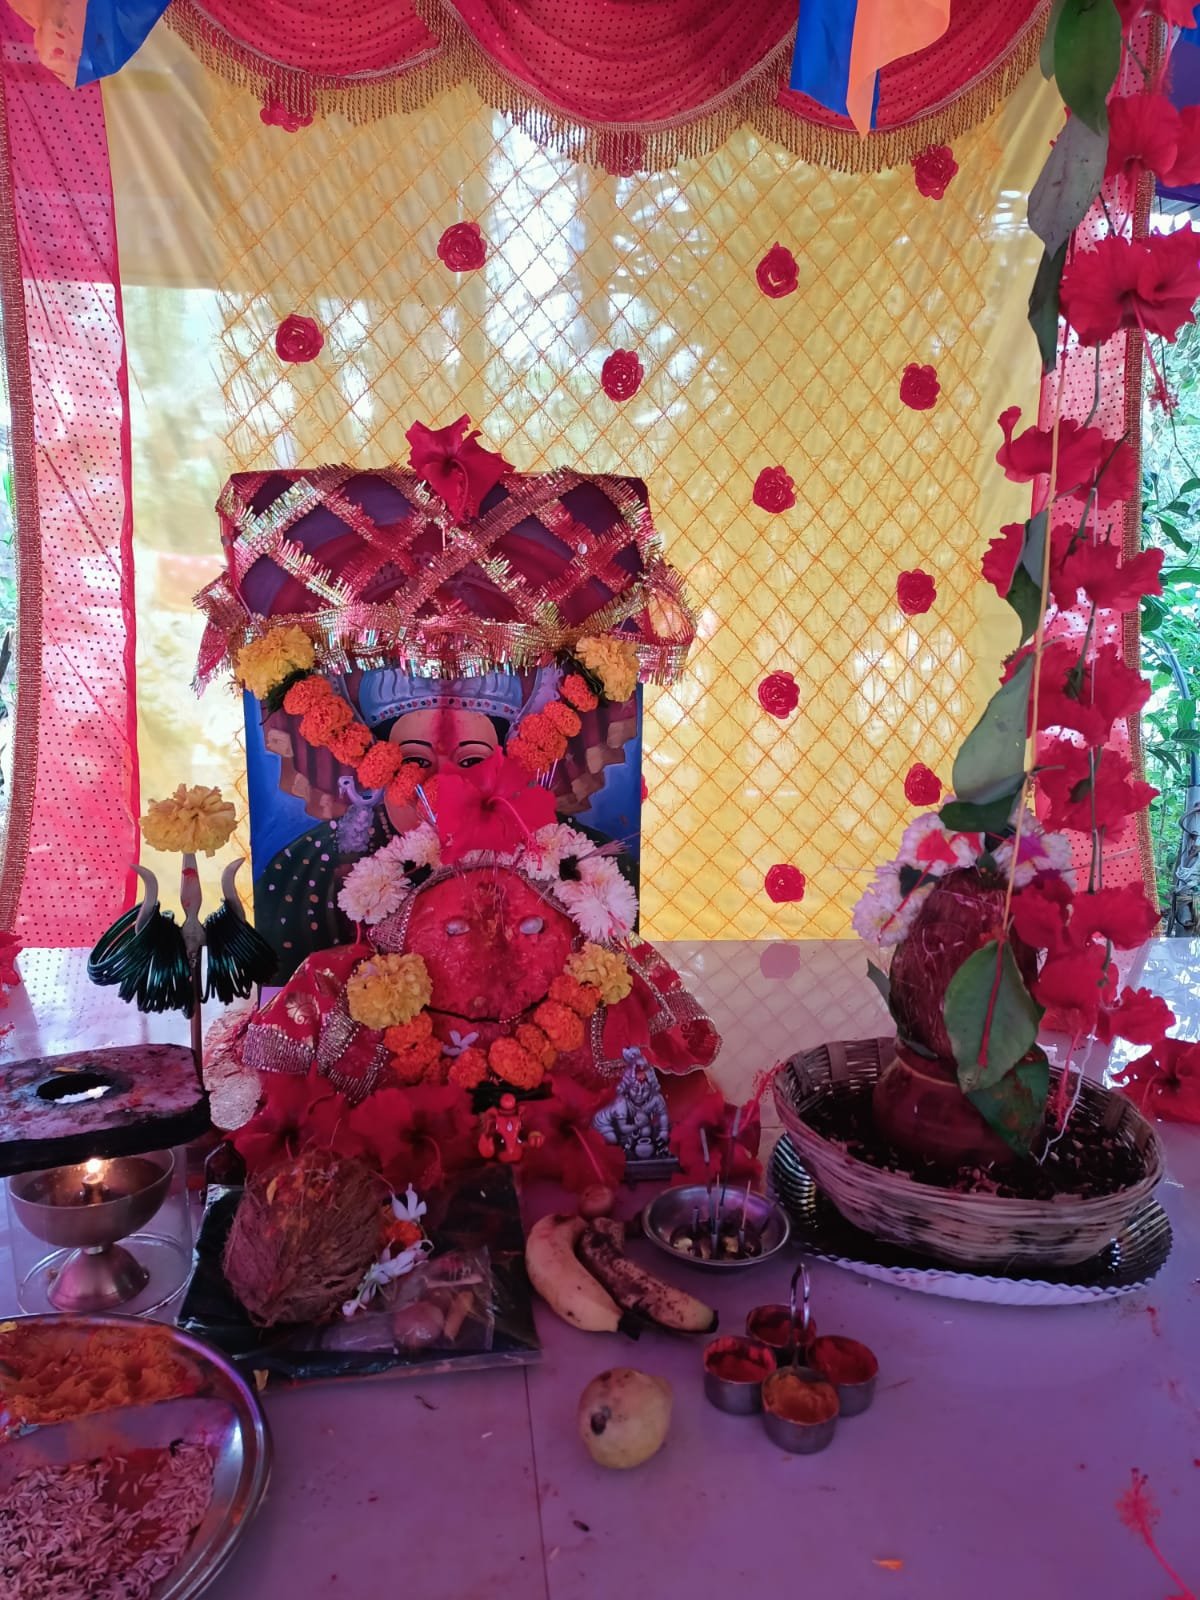 पनवेल परिसरातील नागरिकांचे श्रद्धास्थान असलेले मोहटादेवी(रेणुका माता )मंदिर मध्ये नवरात्र उत्सव जल्लोषात 